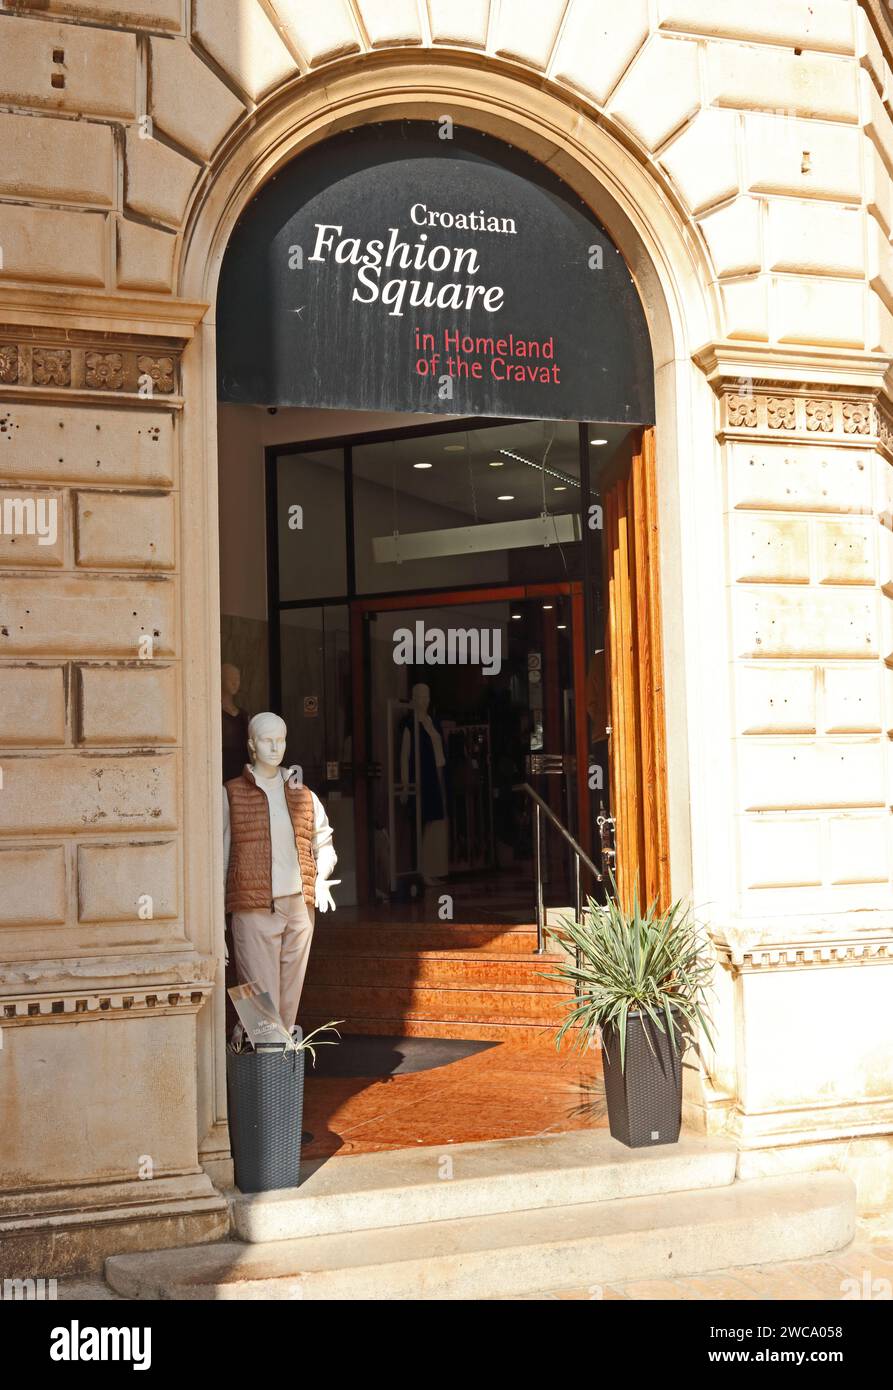 Ingresso alla Piazza della Moda croata, sede del cravat, Zara, Croazia Foto Stock